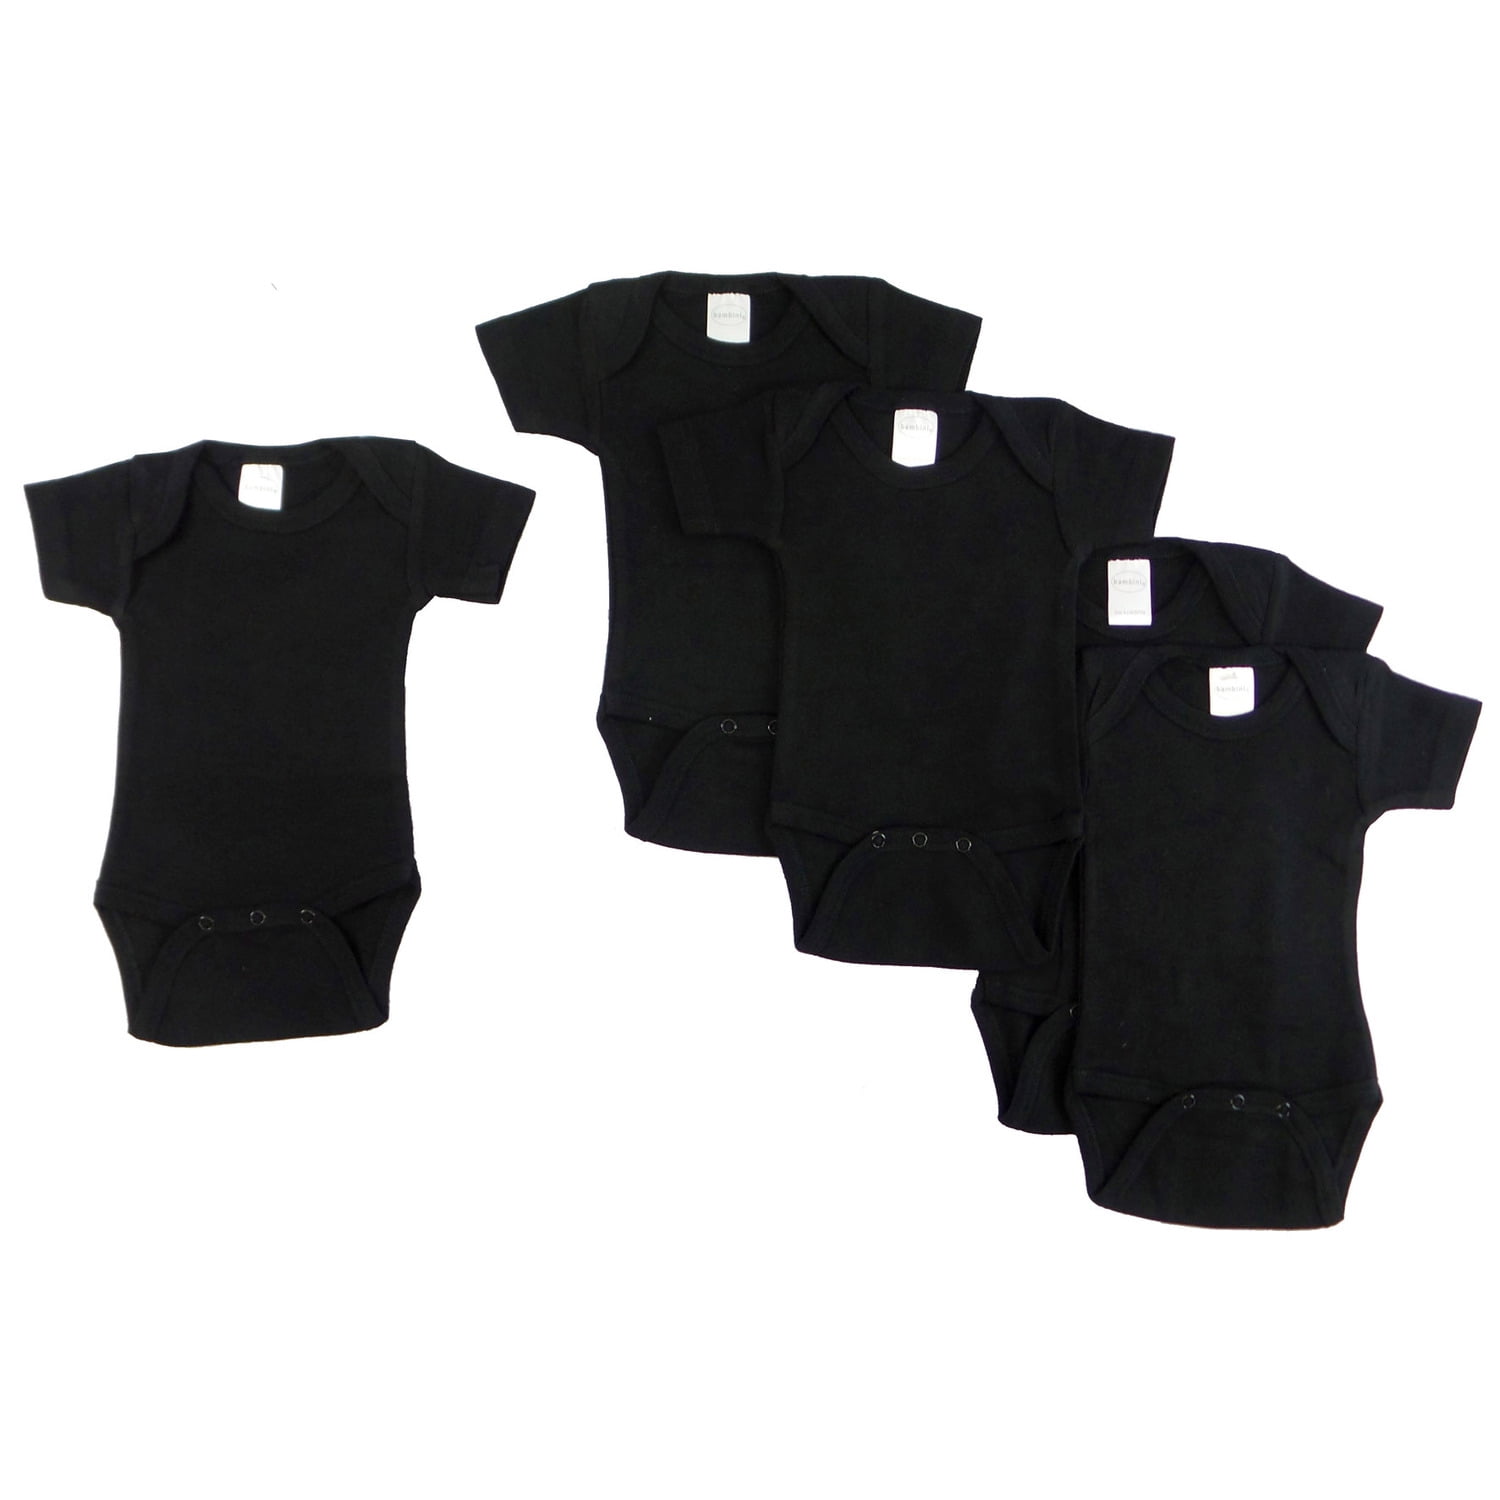 Short Sleeve - Black, Medium - Pack Of 5